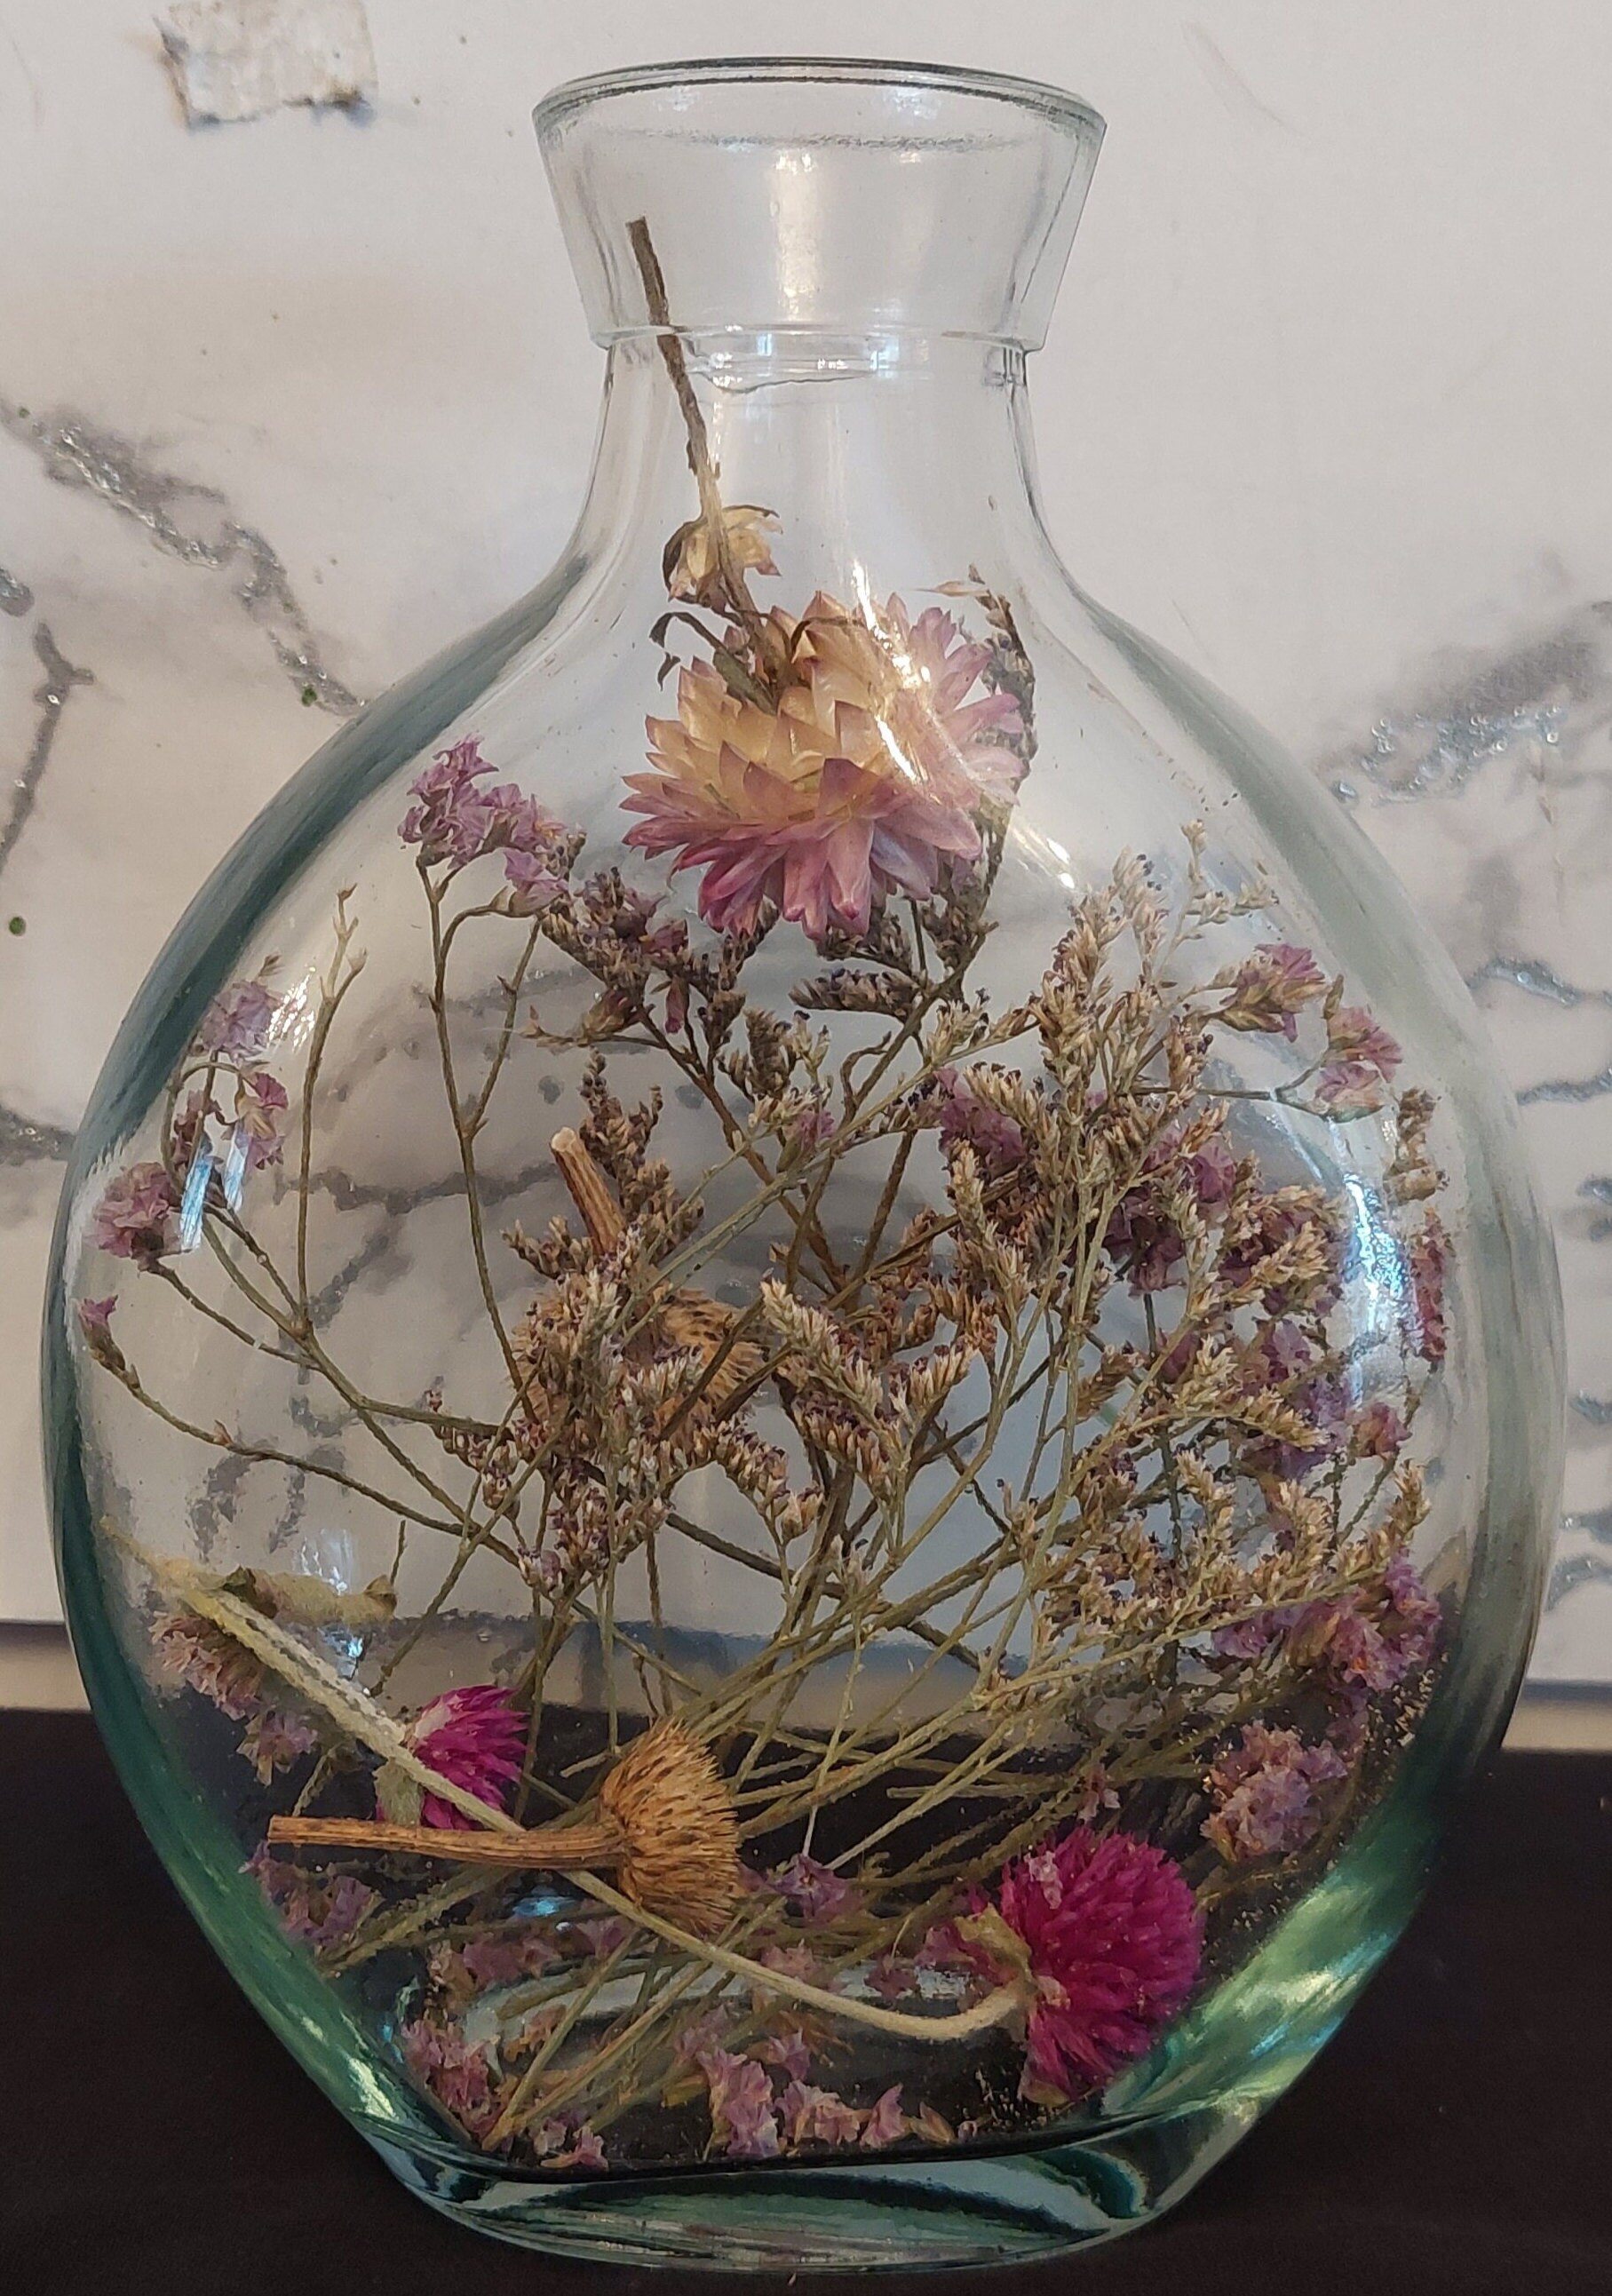 Medium Unique Bag Flower Vase Decoration Simple Dried Flowers Decor for Home